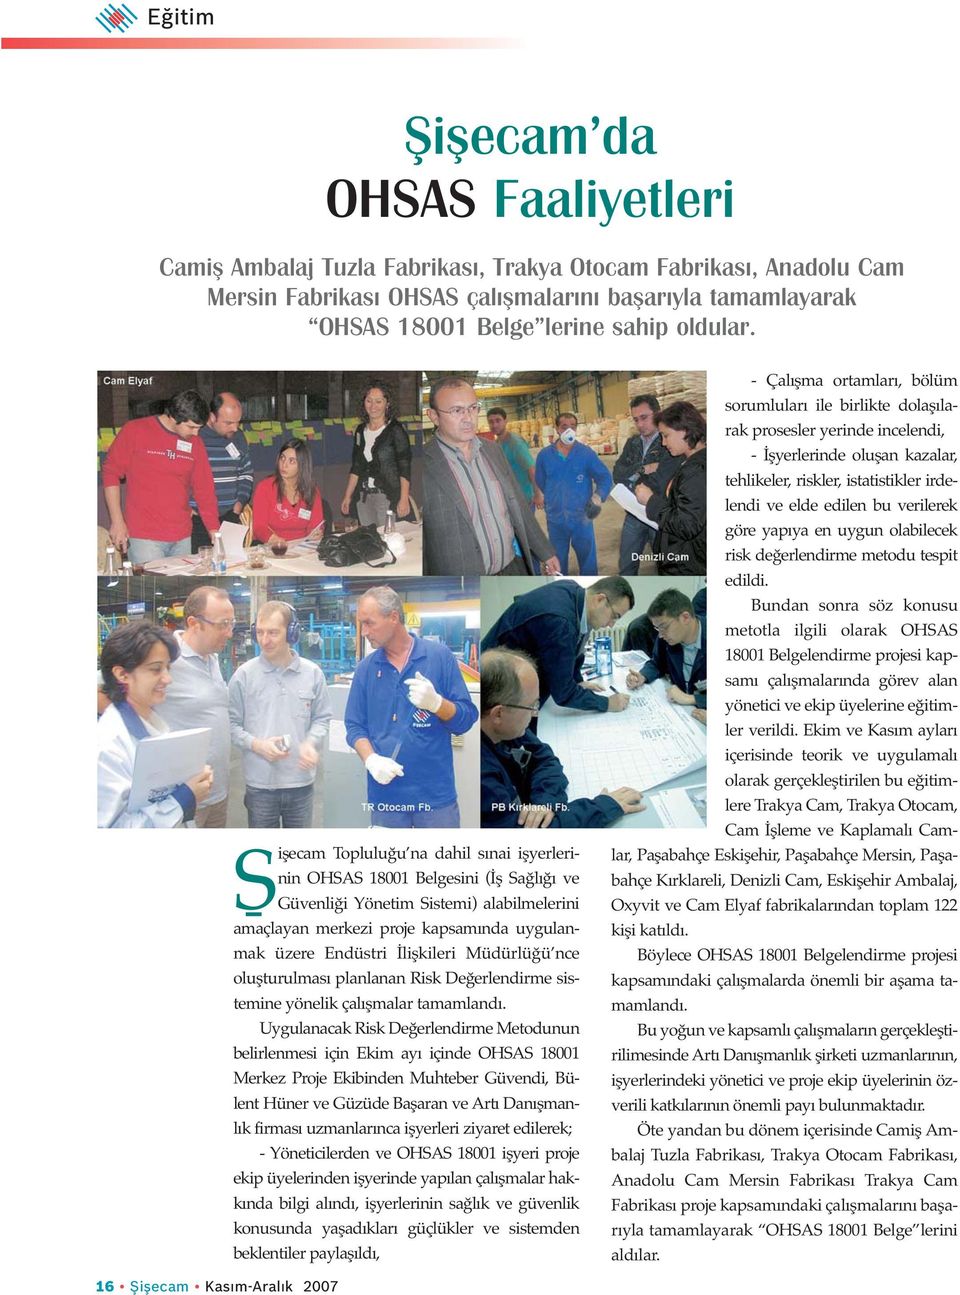 Sişecam Topluluğu na dahil sınai işyerlerinin OHSAS 18001 Belgesini (İş Sağlığı ve Güvenliği Yönetim Sistemi) alabilmelerini amaçlayan merkezi proje kapsamında uygulanmak üzere Endüstri İlişkileri